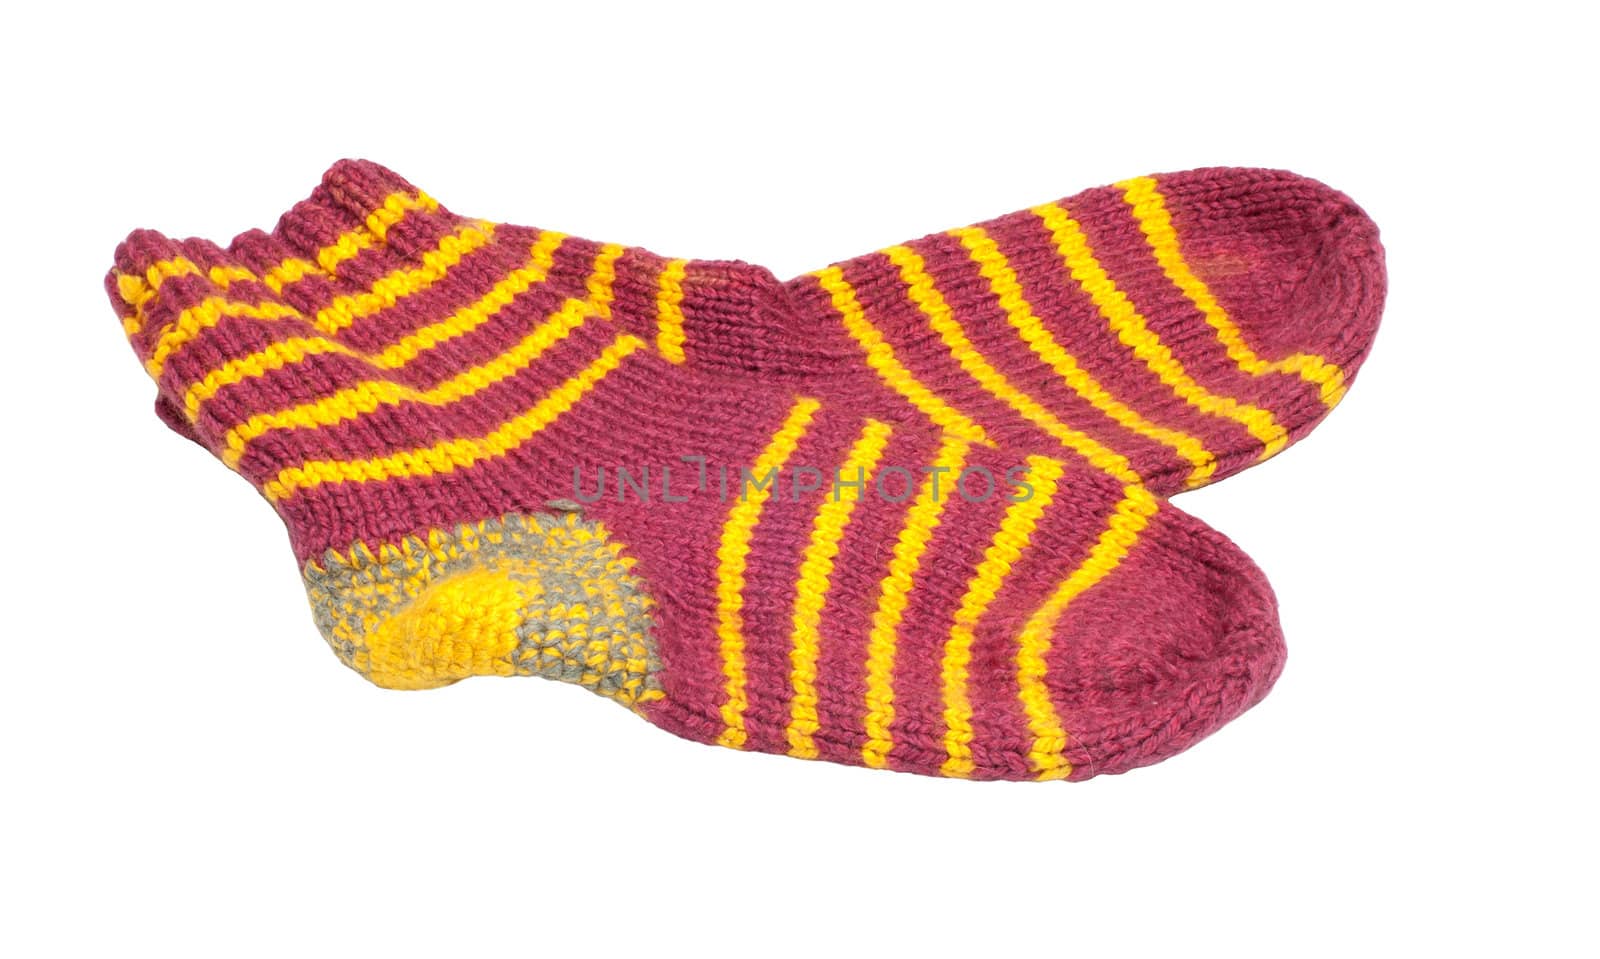 Woolen socks. by kromeshnik